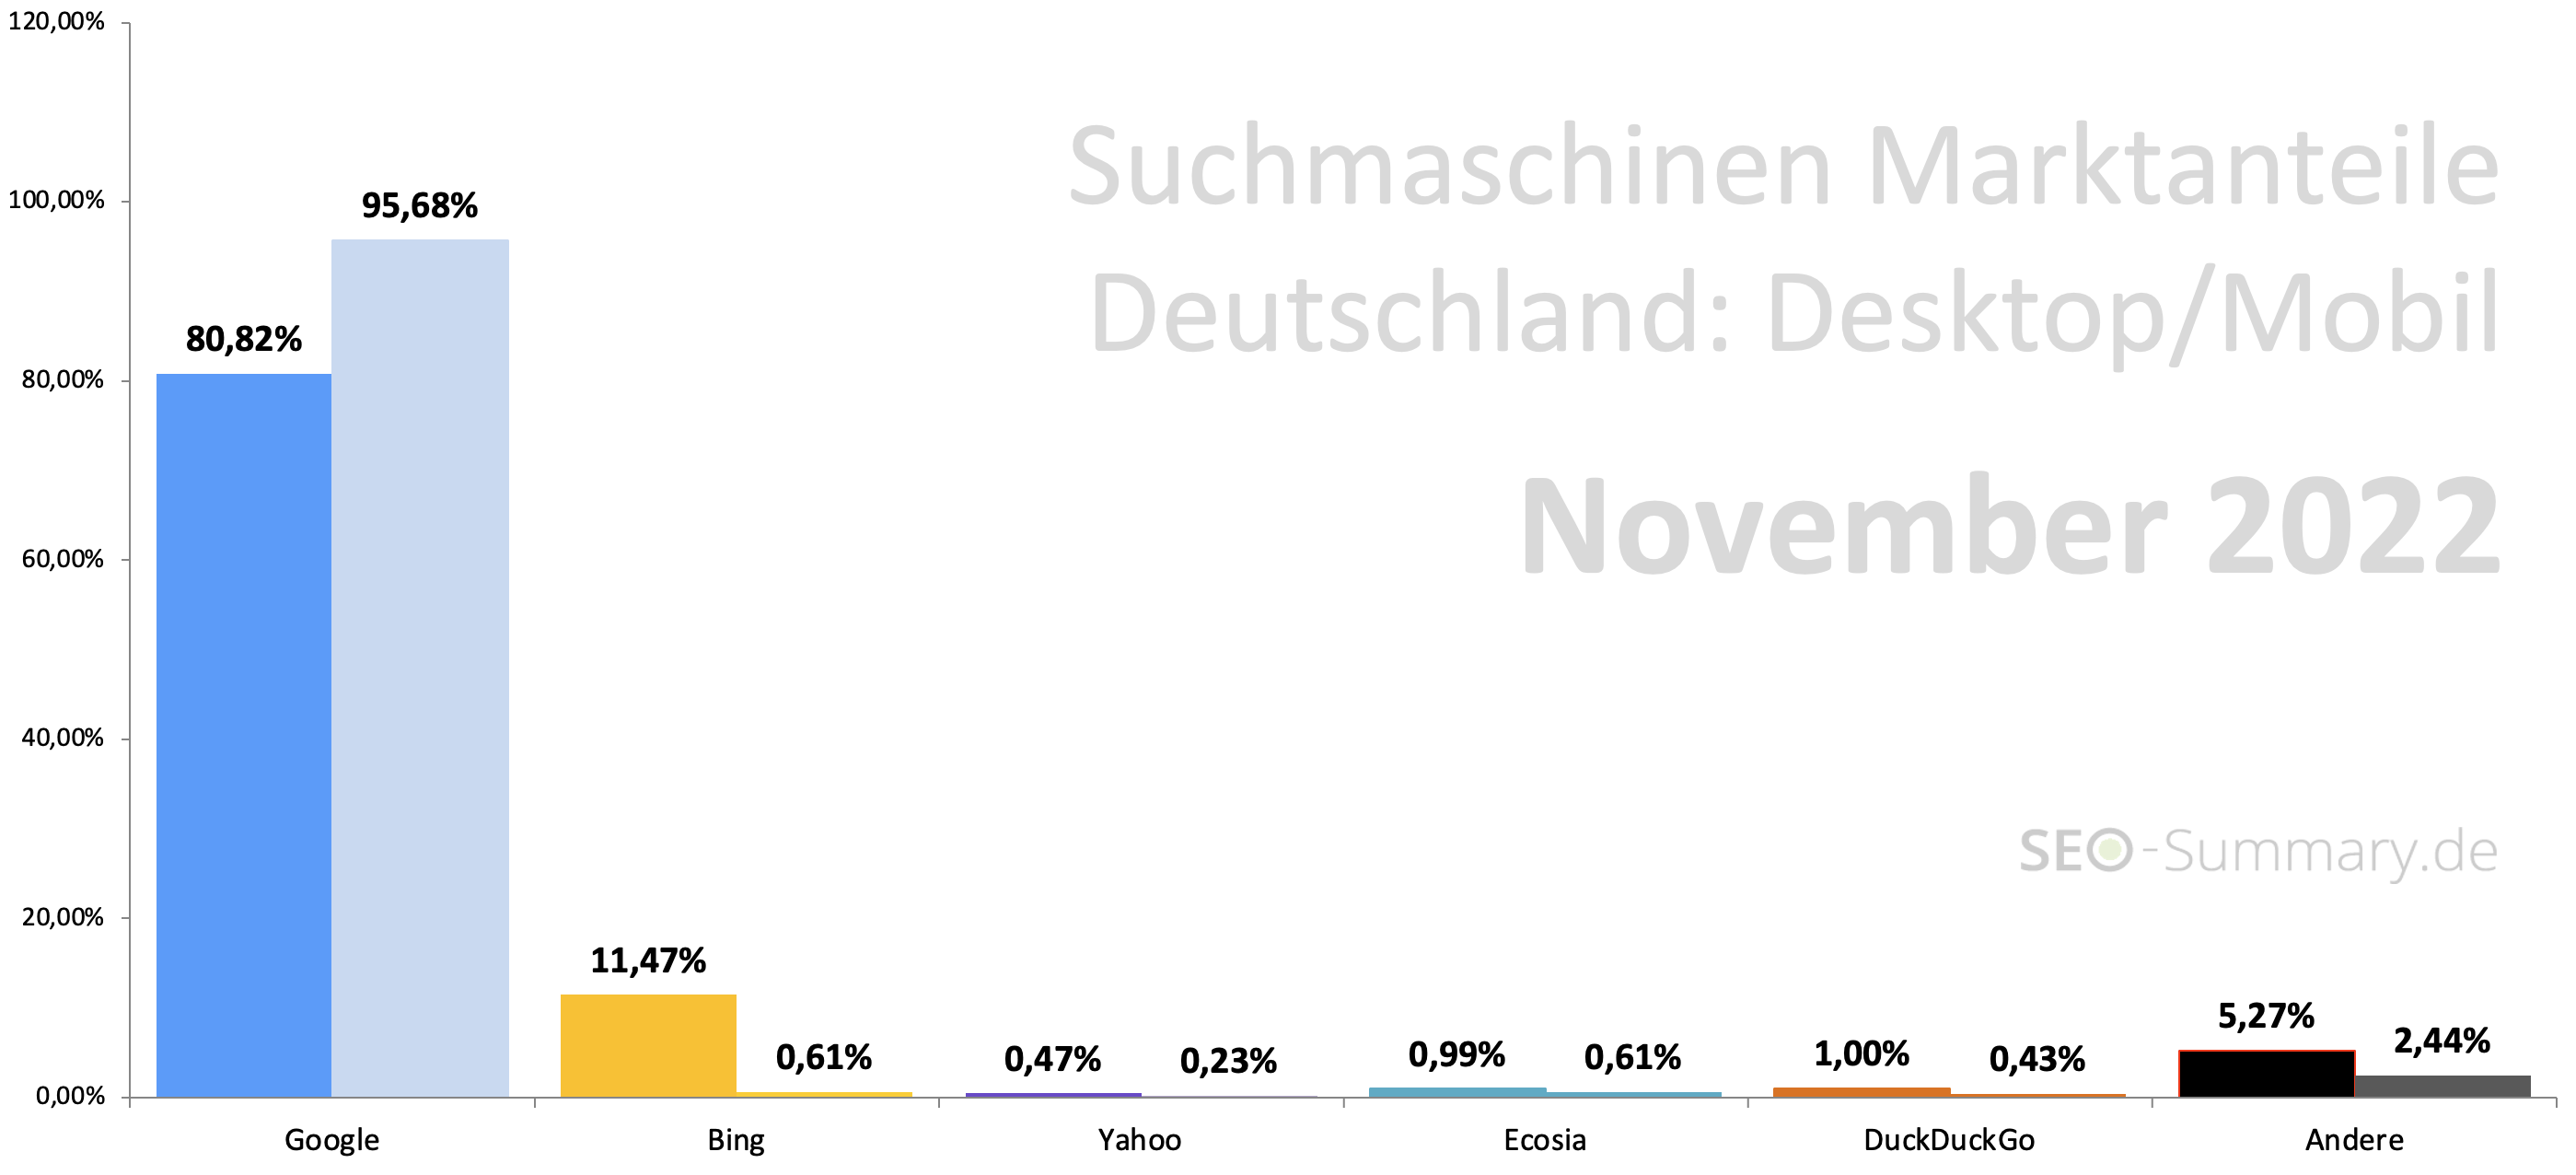 Suchmaschinen Marketanteile Deutschland (November 2022)